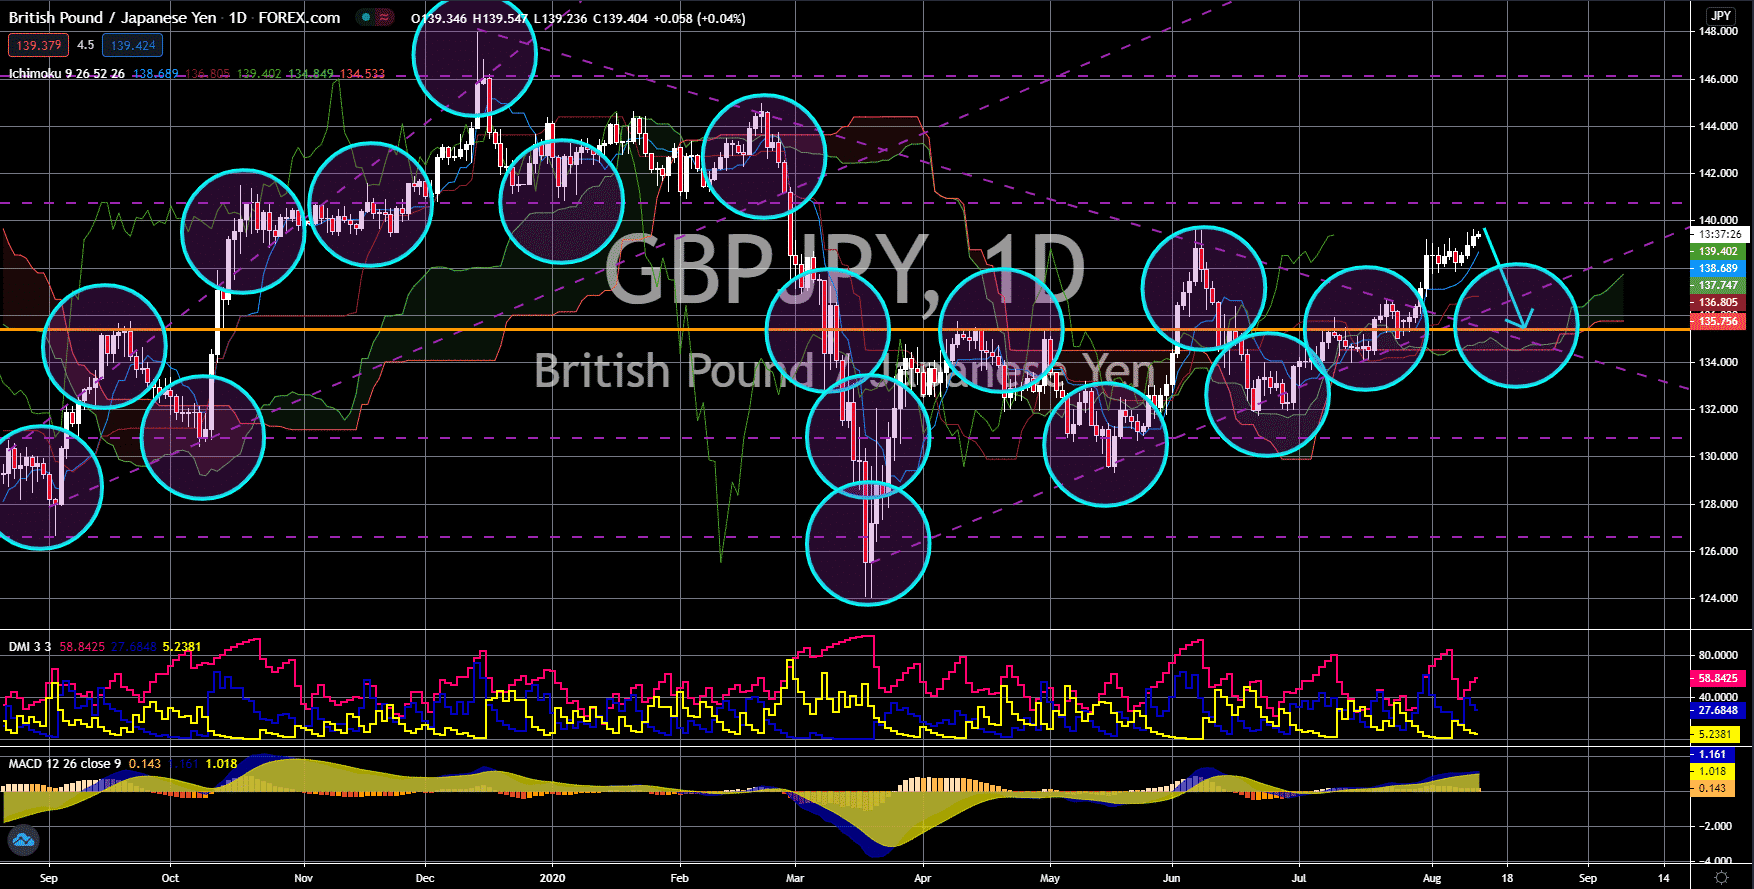 FinanceBrokerage - Notícias do Mercado: GBP/JPY Gráfico